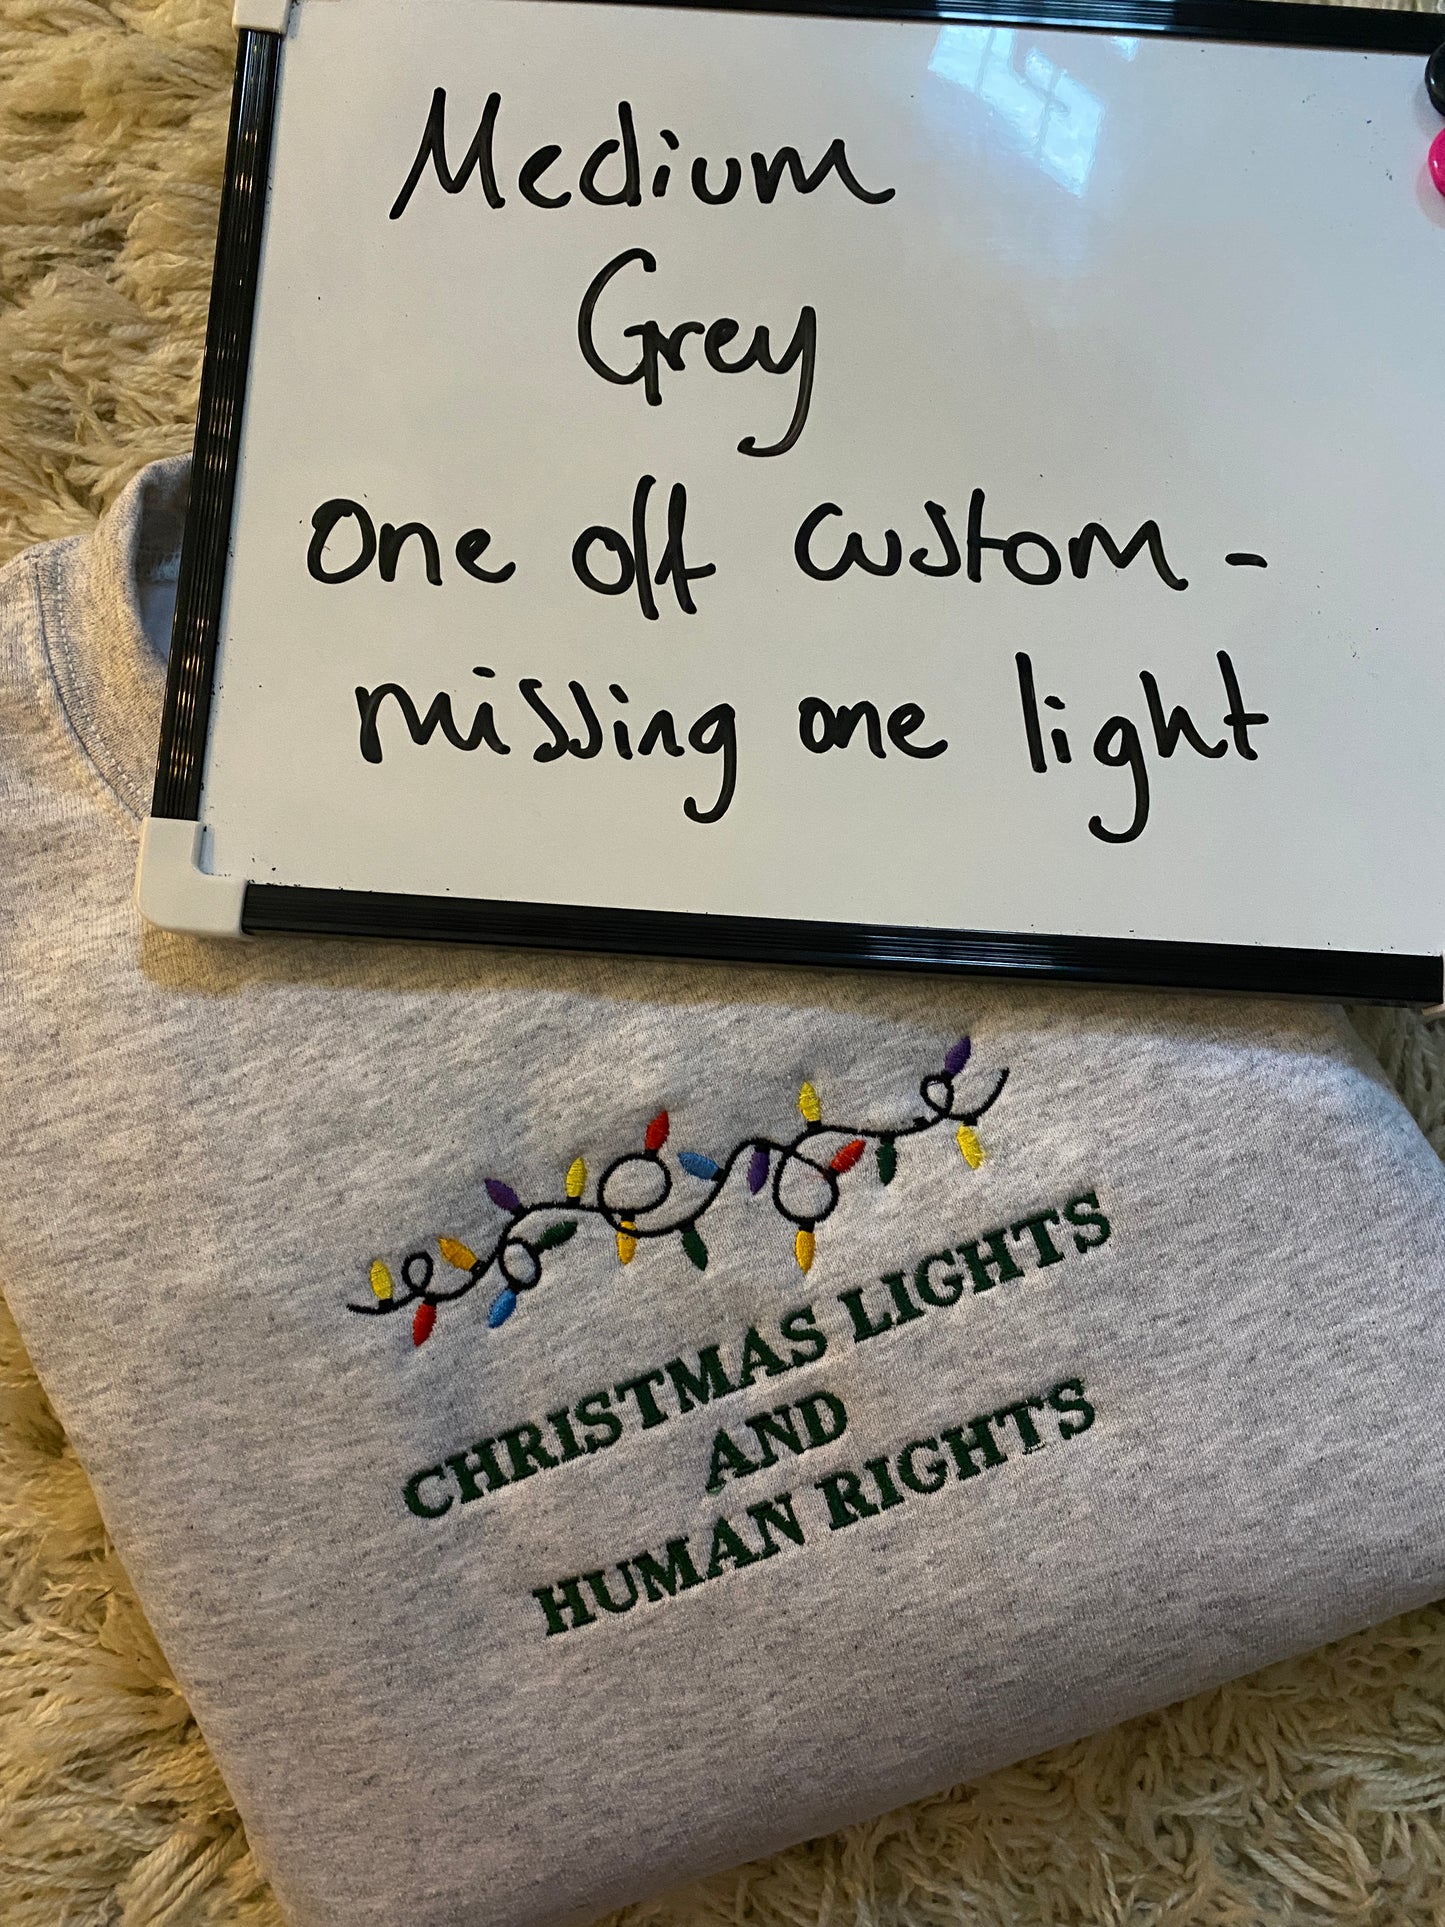 Christmas Lights and Human Rights